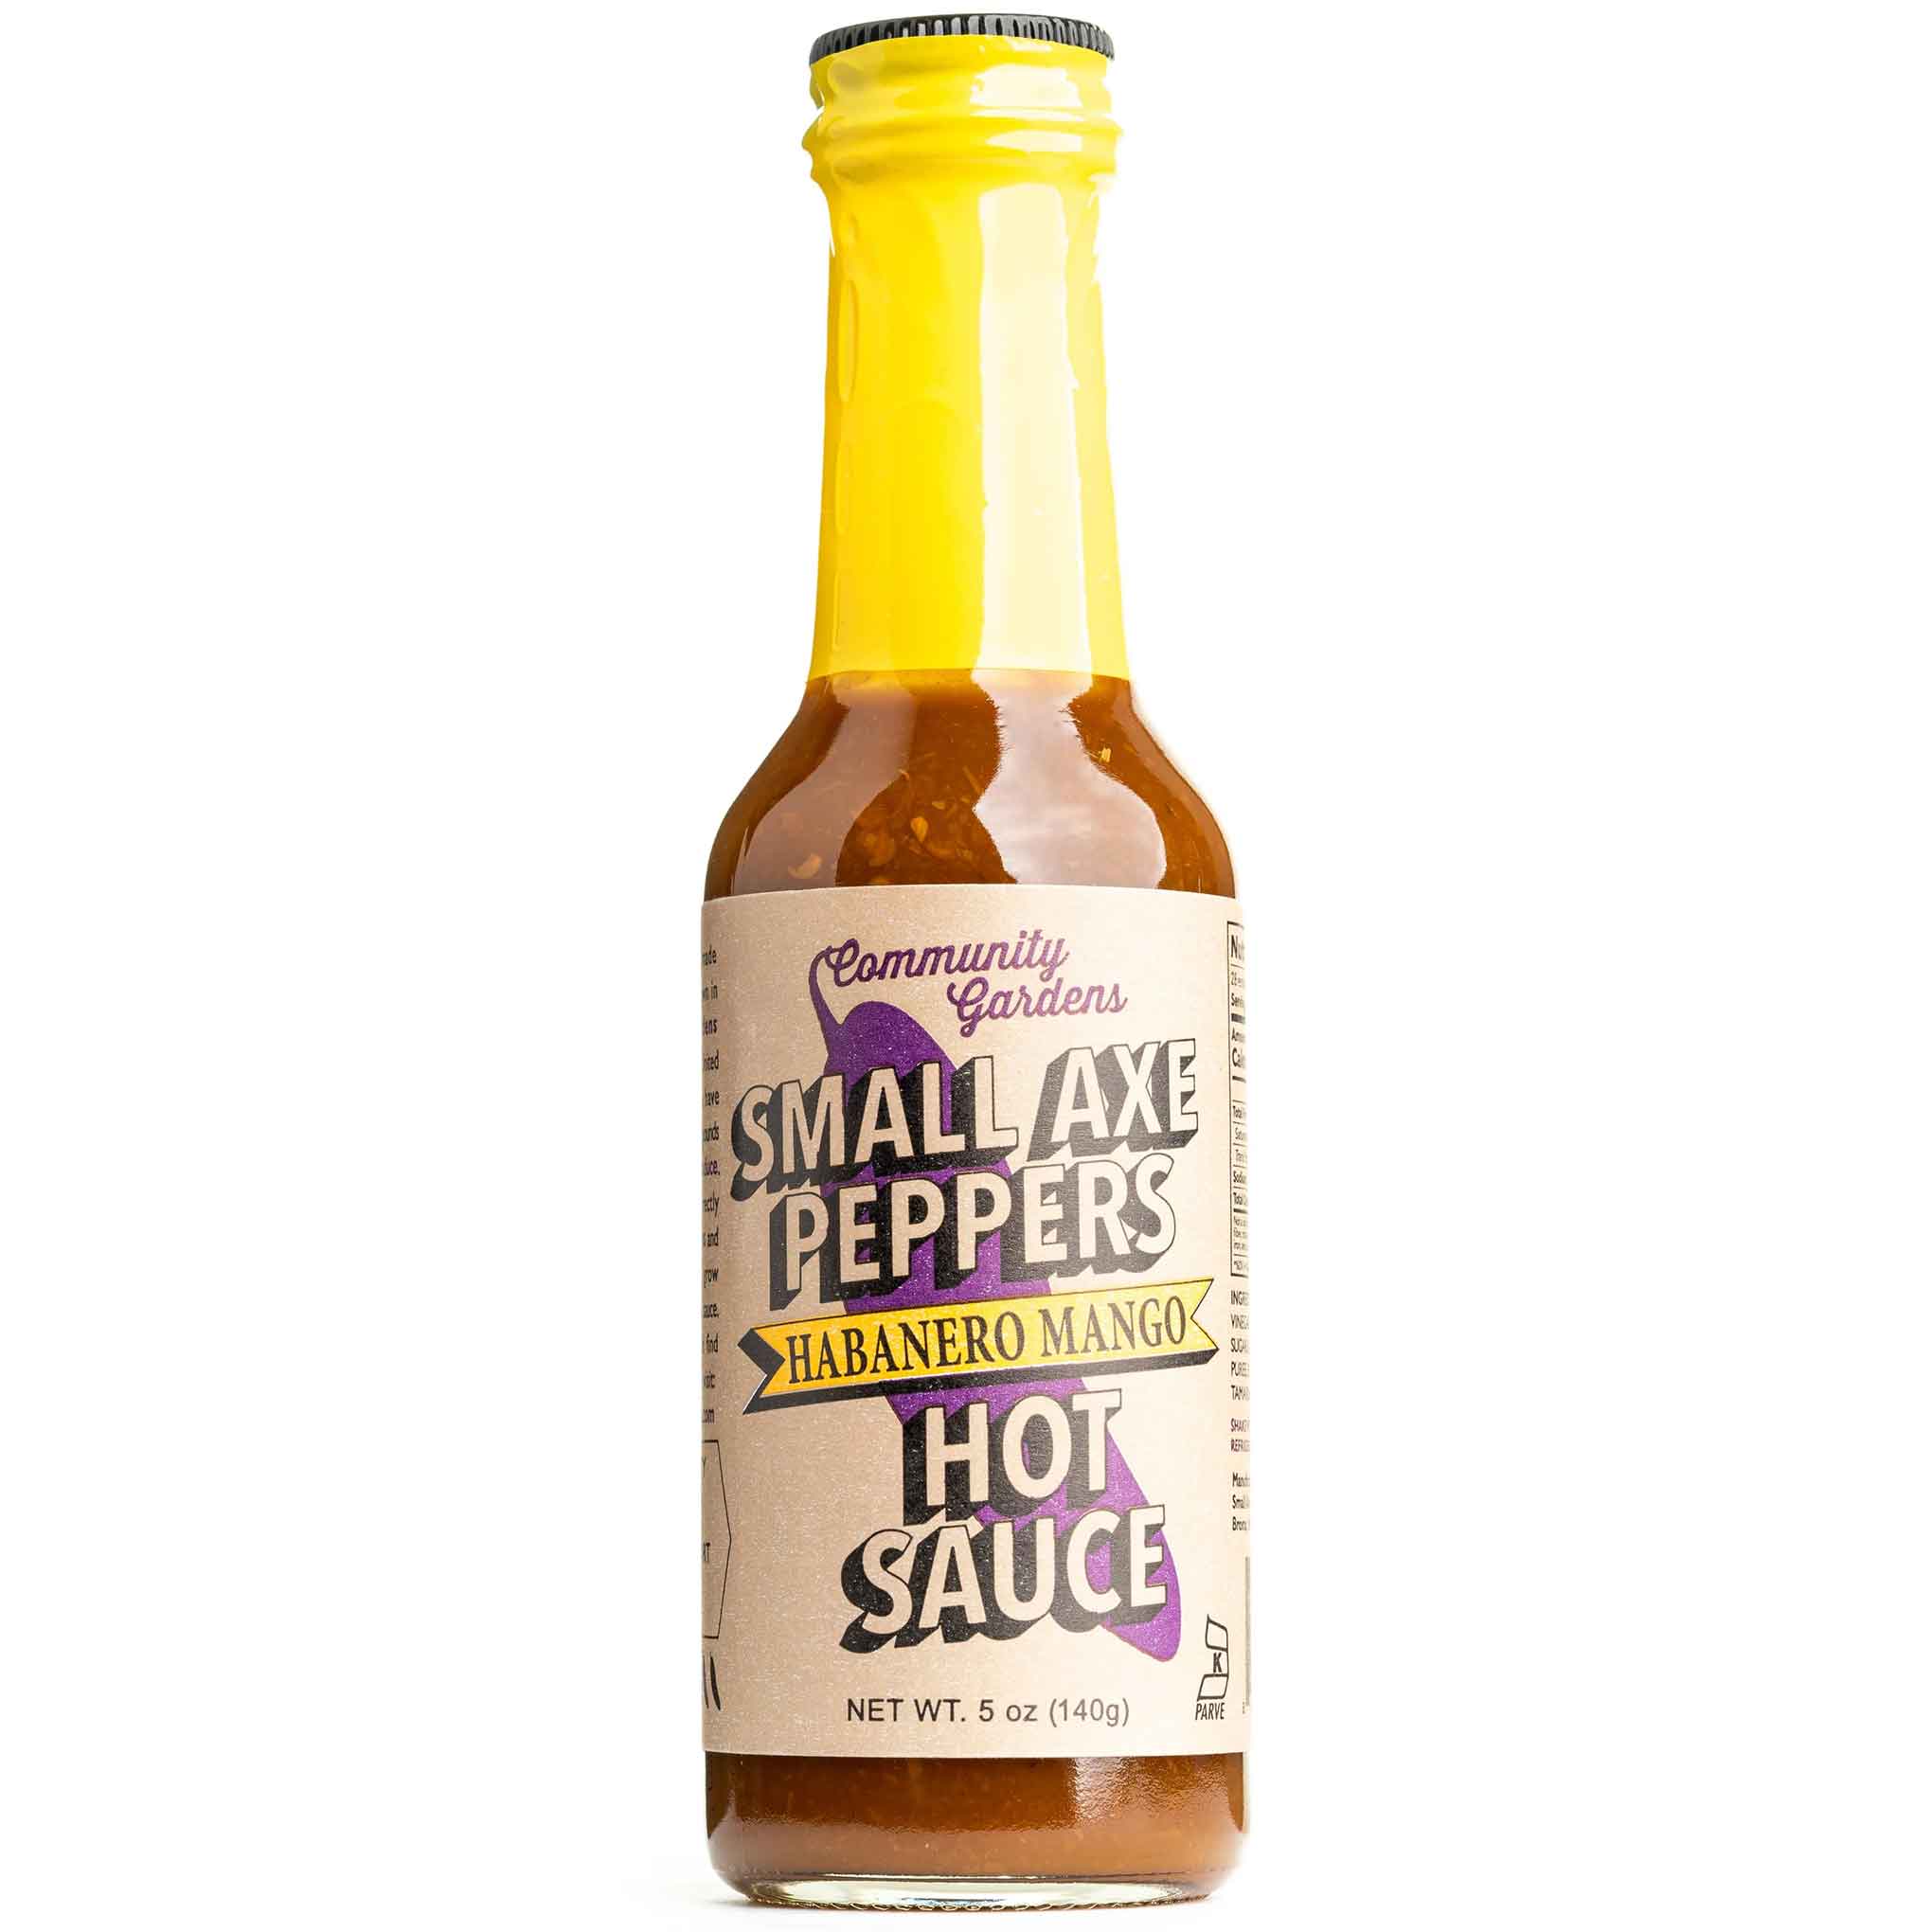 Small Axe Peppers - Habanero Mango Hot Sauce